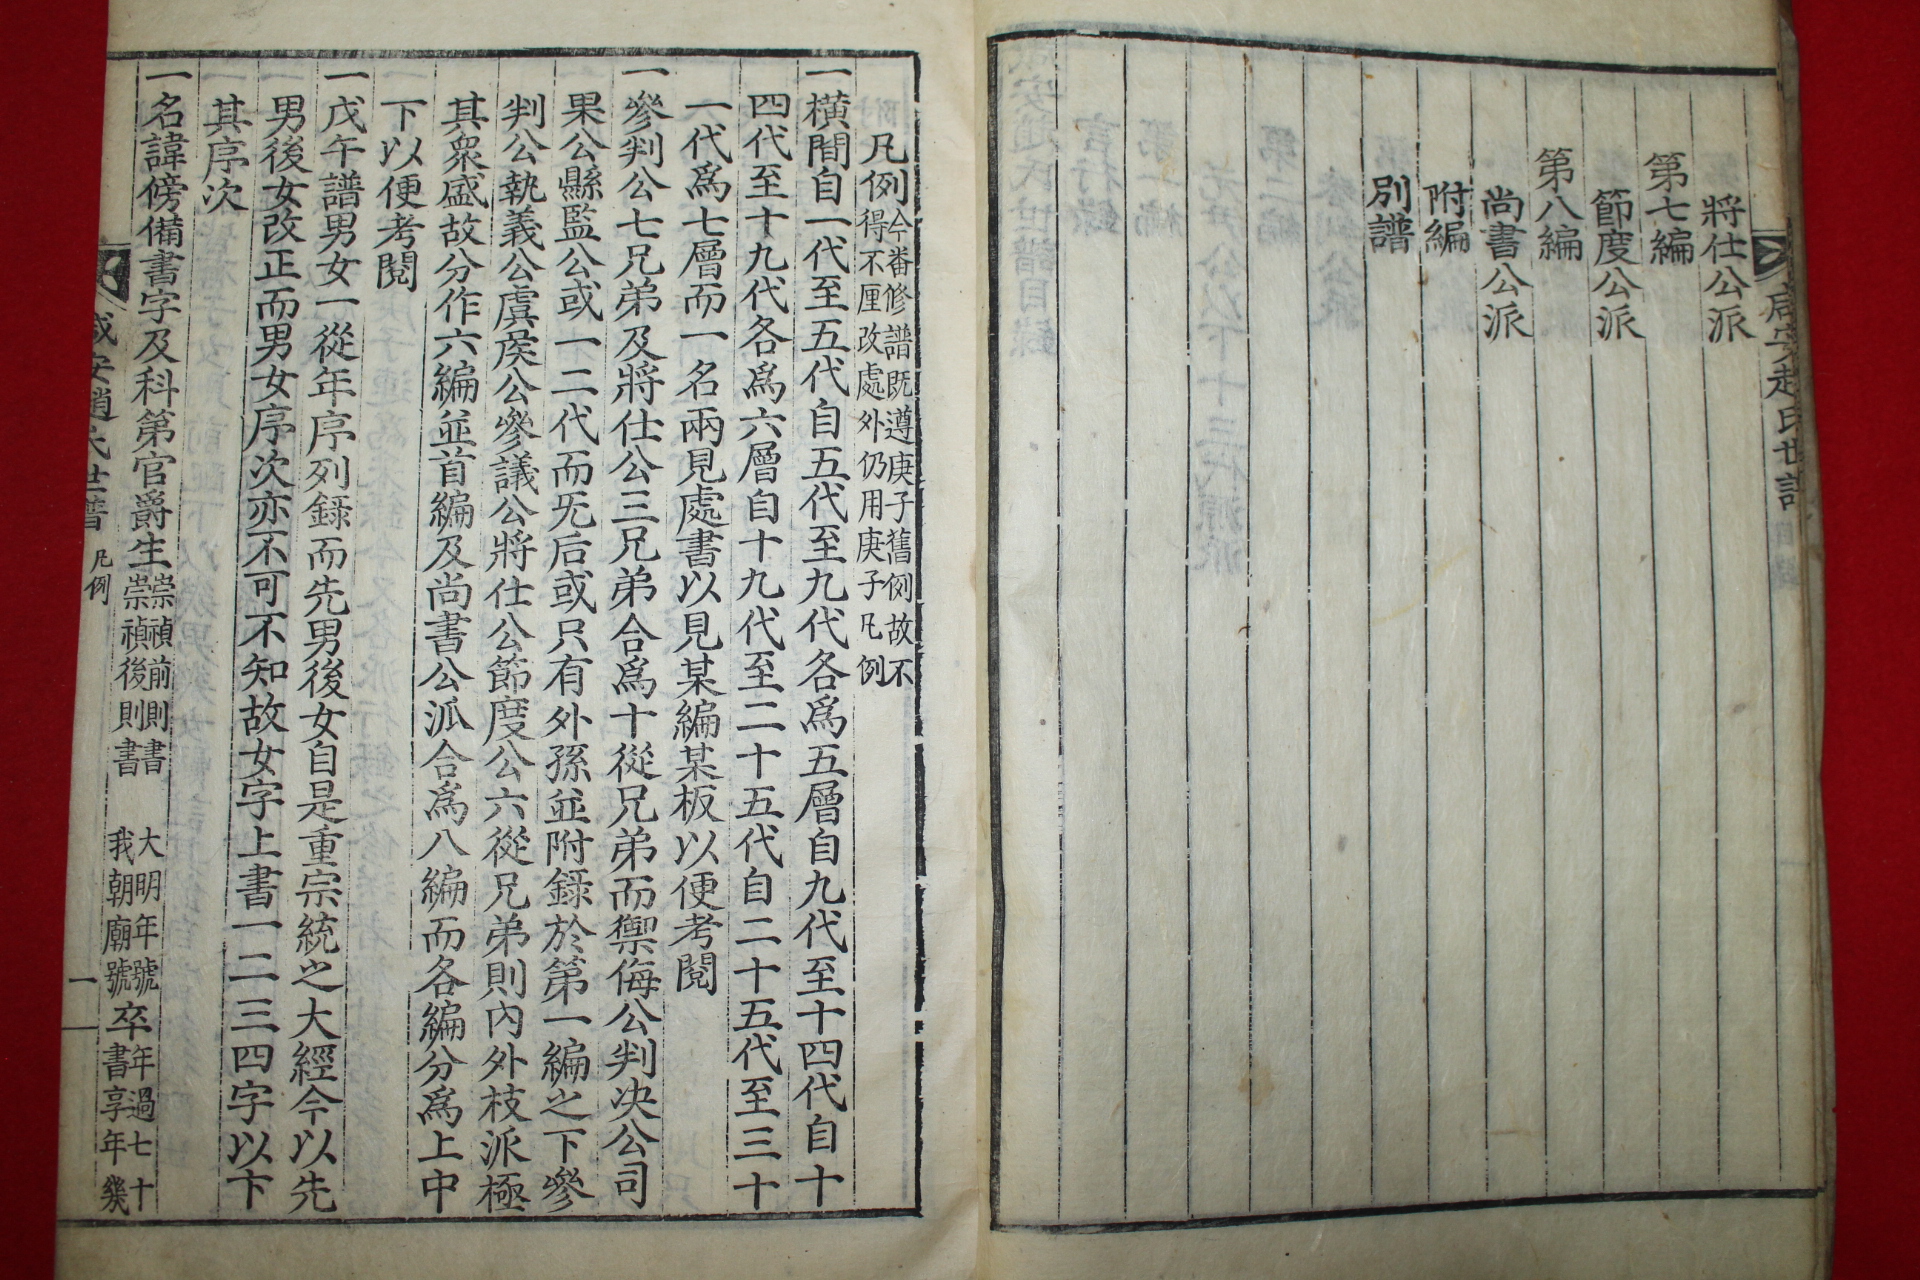 1739년 목판본및활자본 함안조씨세보(咸安趙氏世譜) 3책